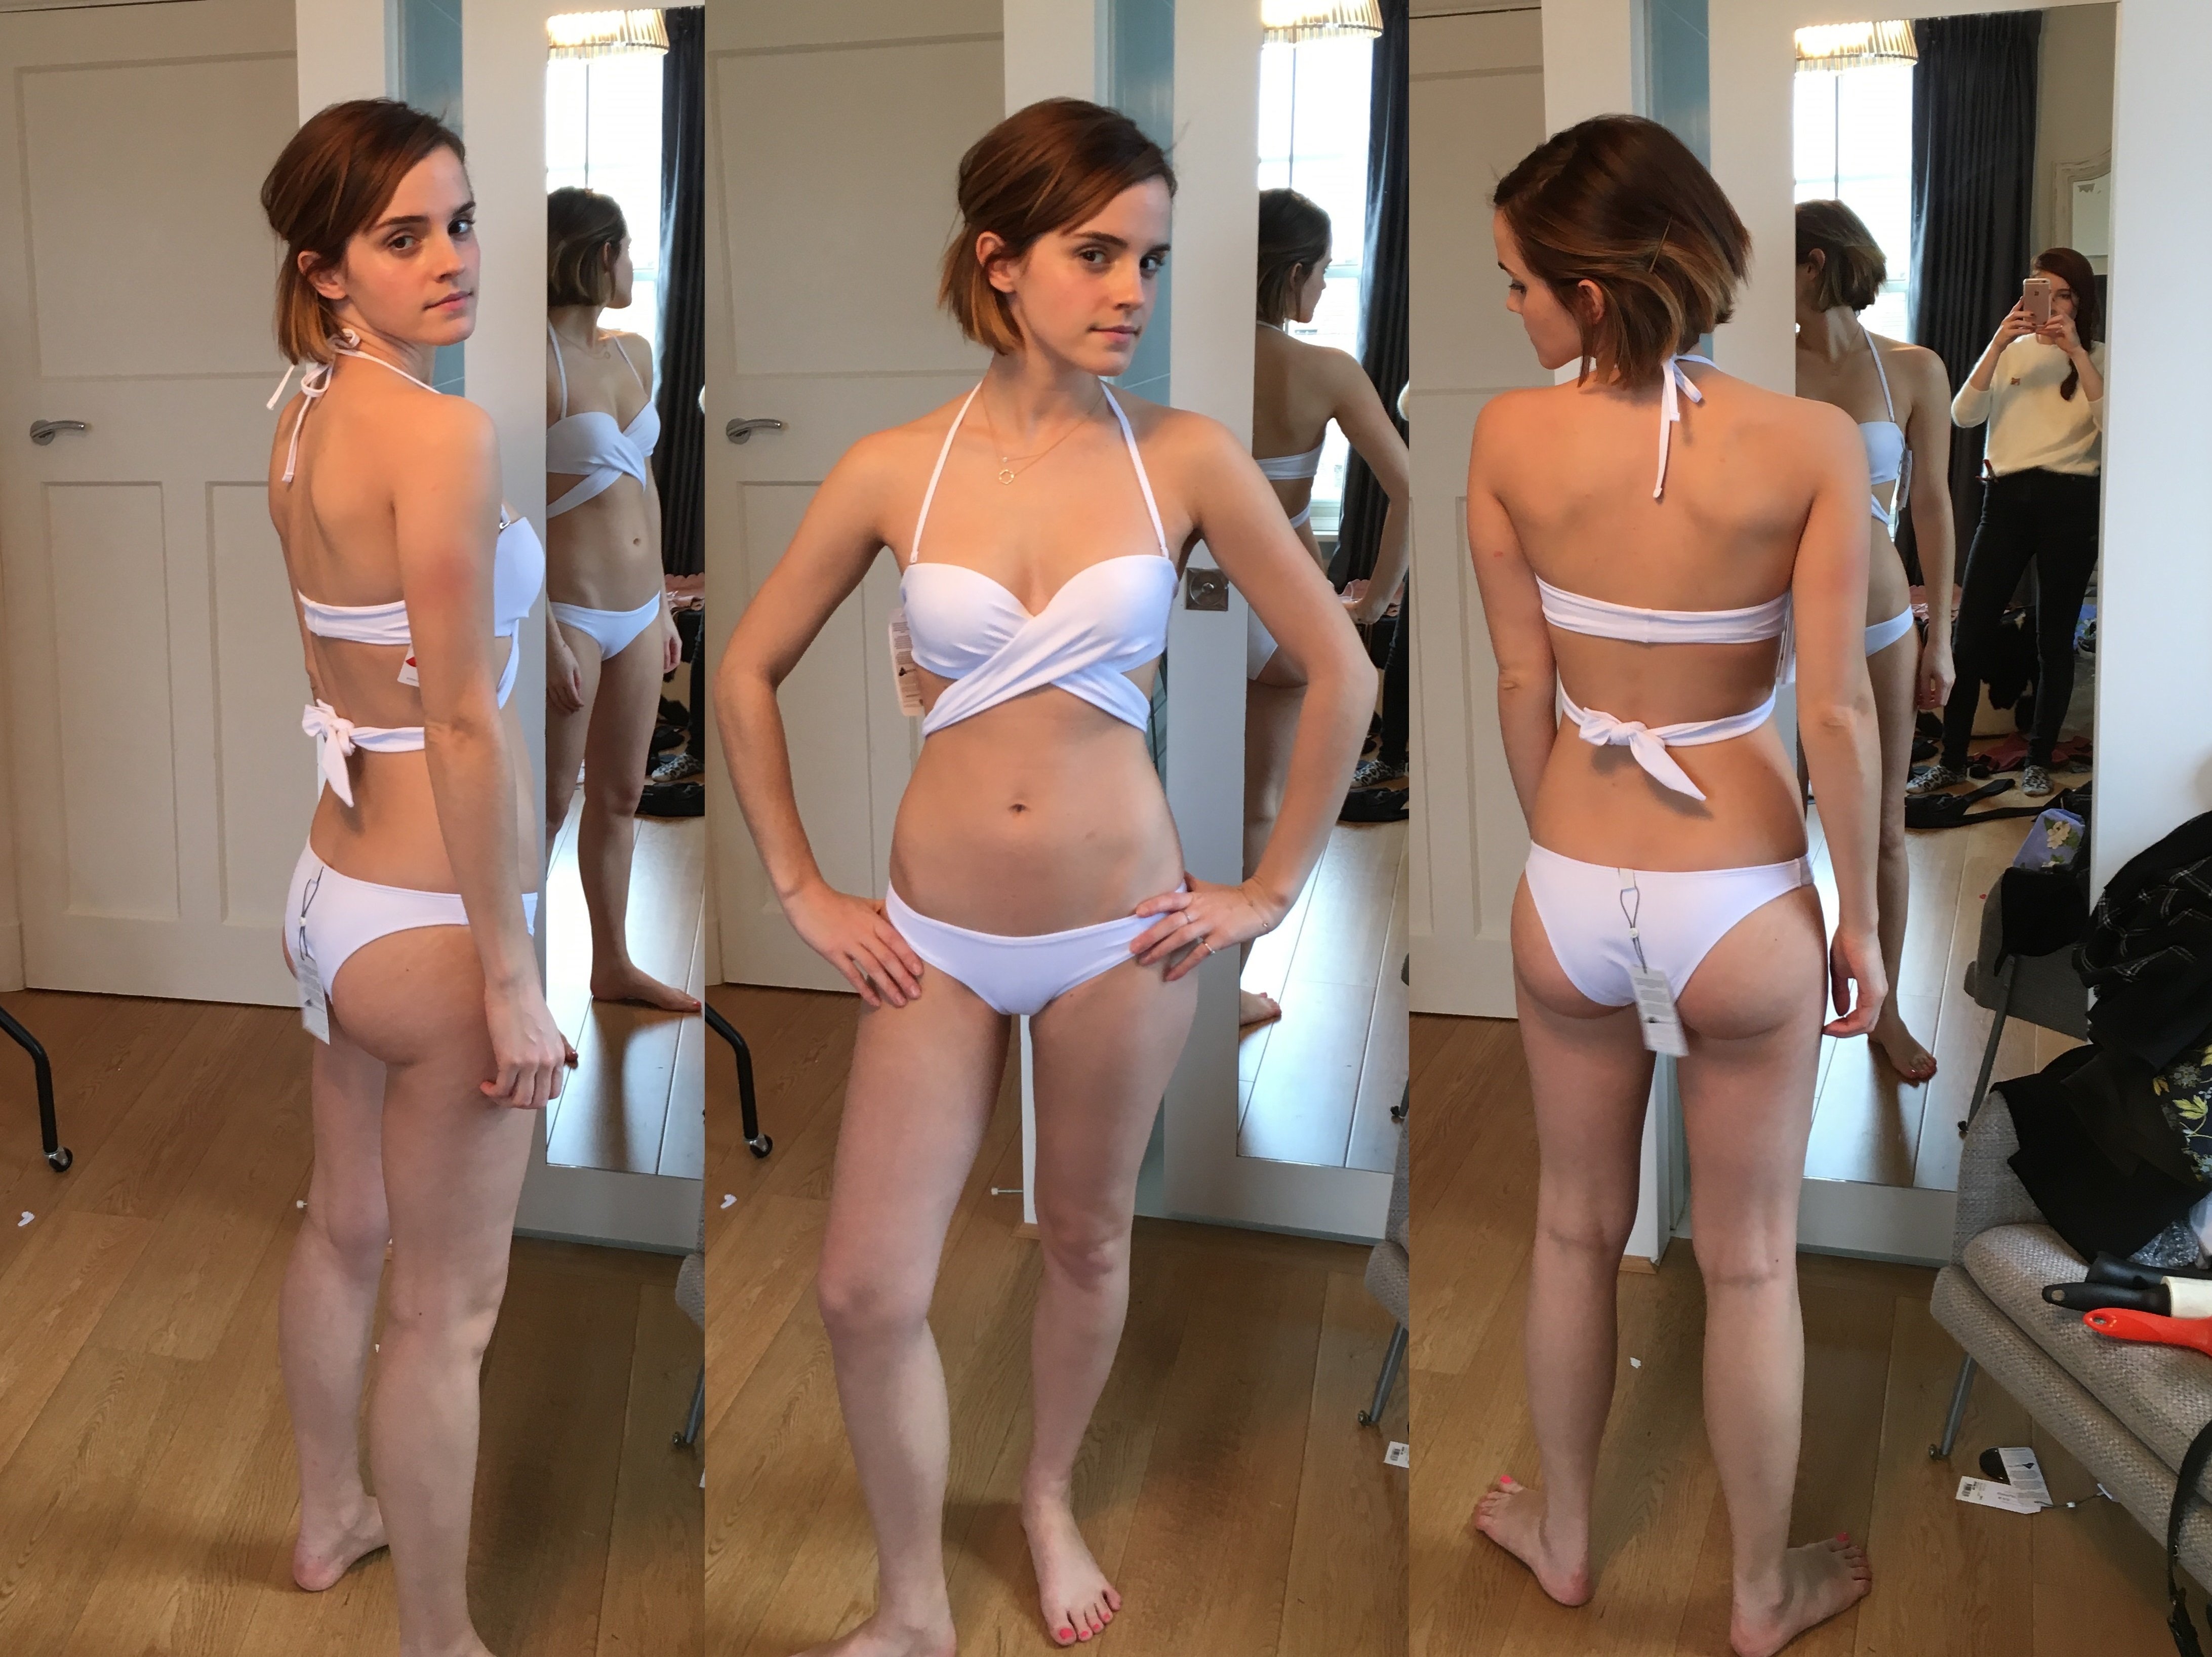 Le corps FOIREUX d'Emma Watson, on en talk? - Page 1 - AVENO